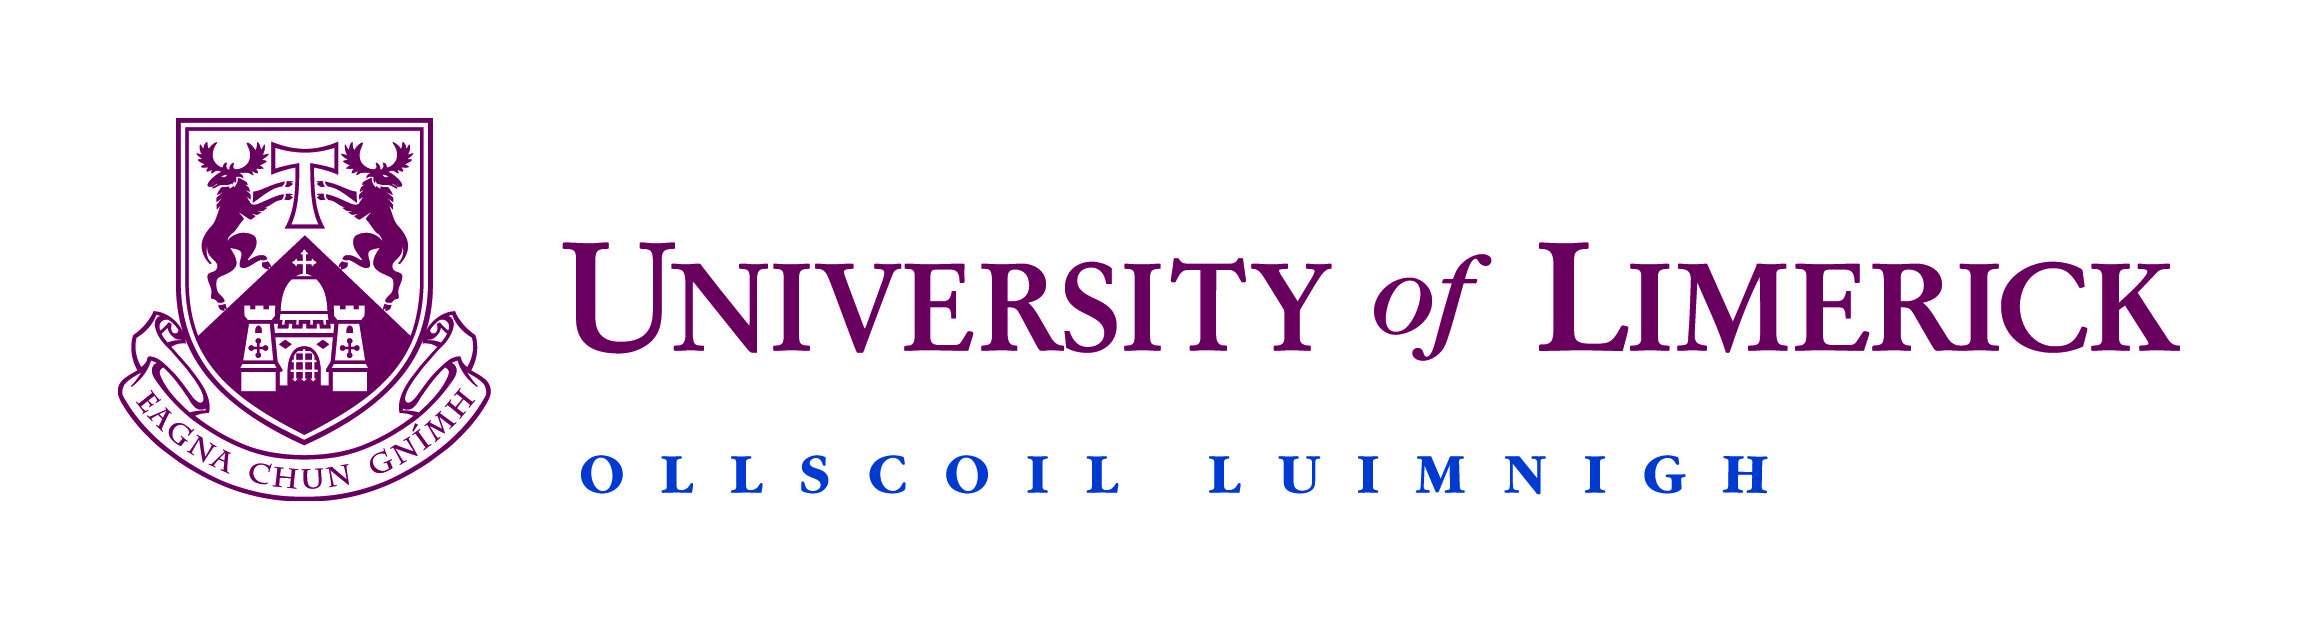 Ul University Of Limerick Ul University Of Limerick